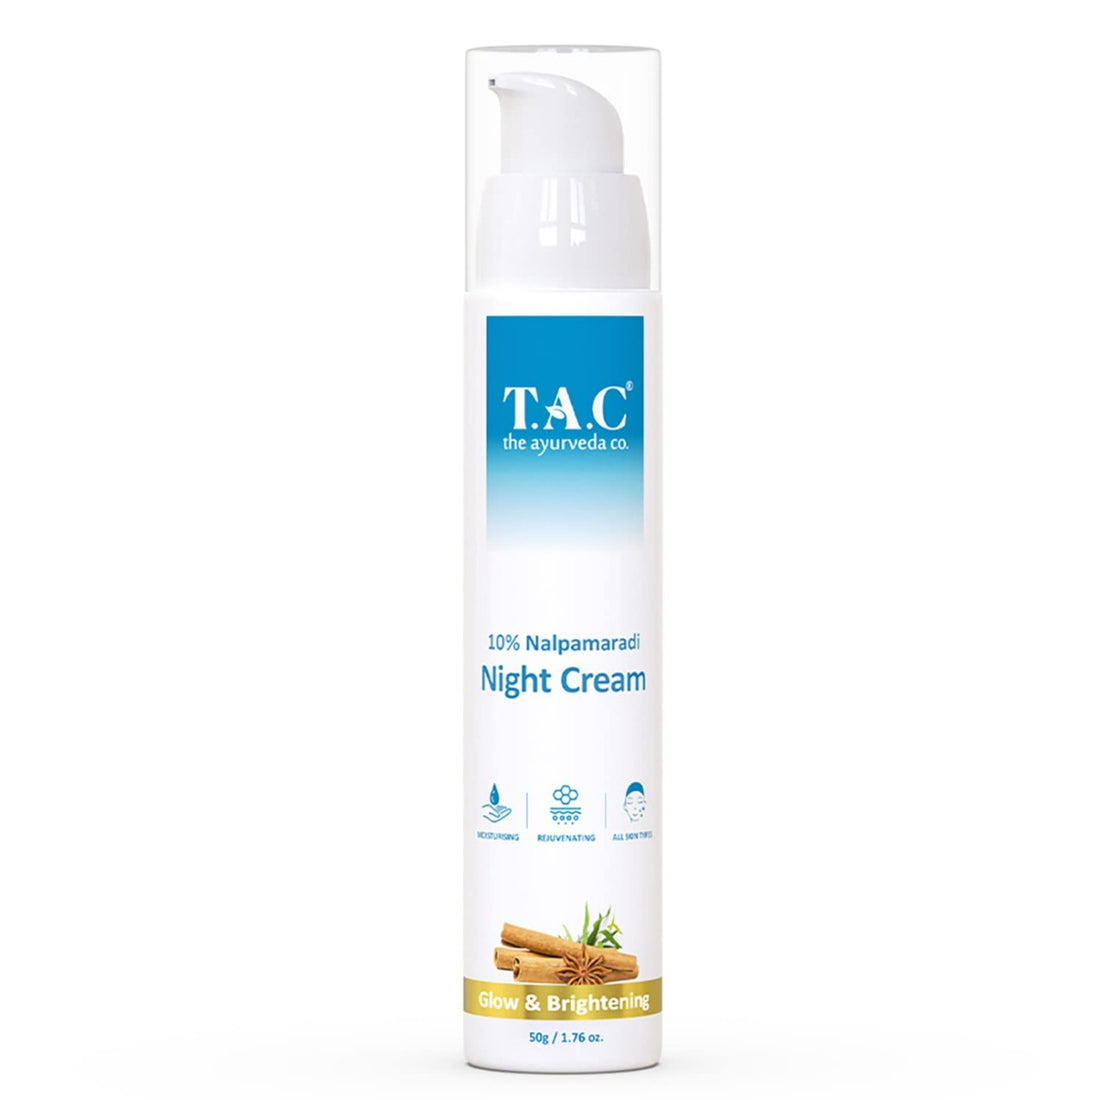 TAC - The Ayurveda Co. 10% Nalpamaradi Night Cream for Glow and Brightening (50gm)